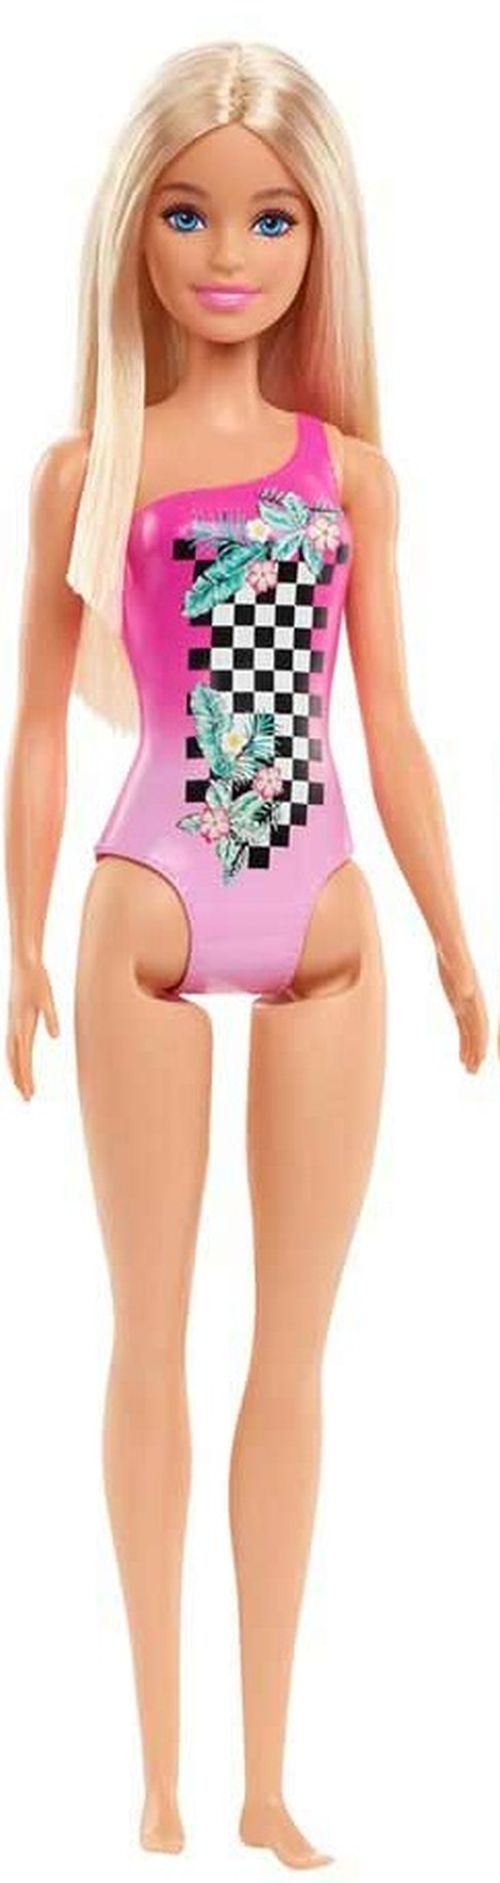 MATTEL Barbie Beach Doll In Pink Swimsuit - .